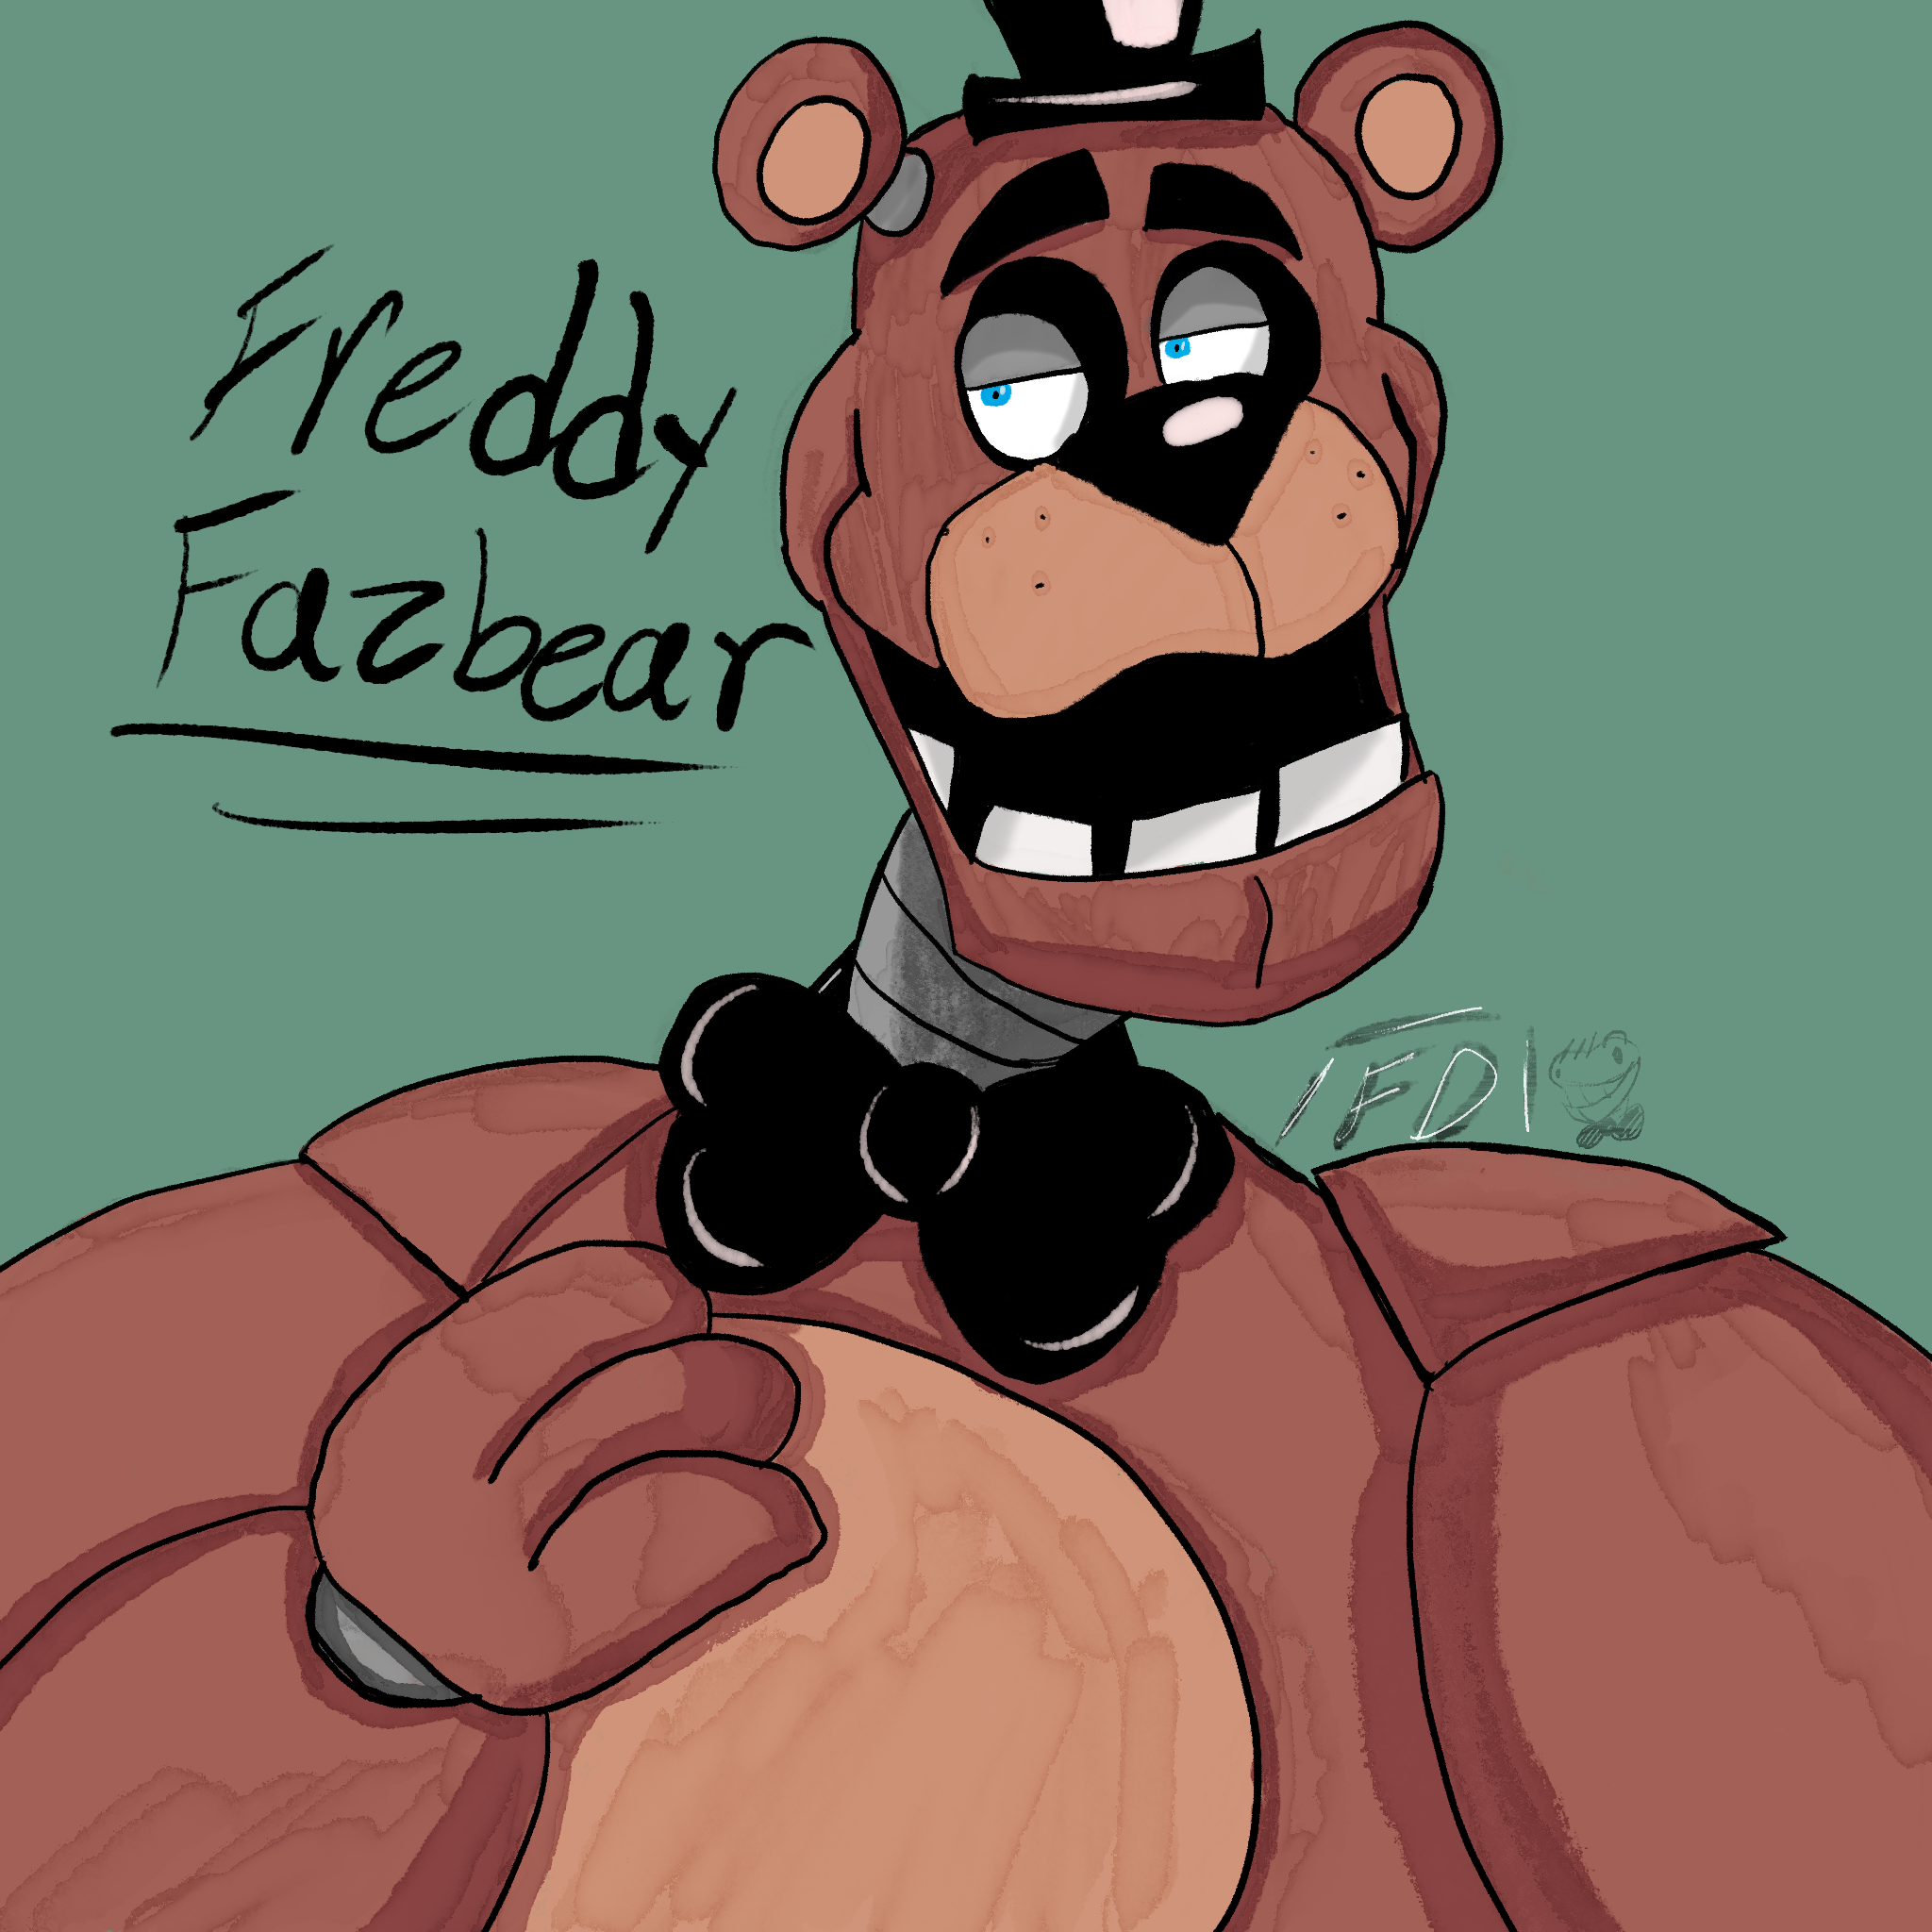 9 x 12 Fnaf fan art Freddy fazbear DB